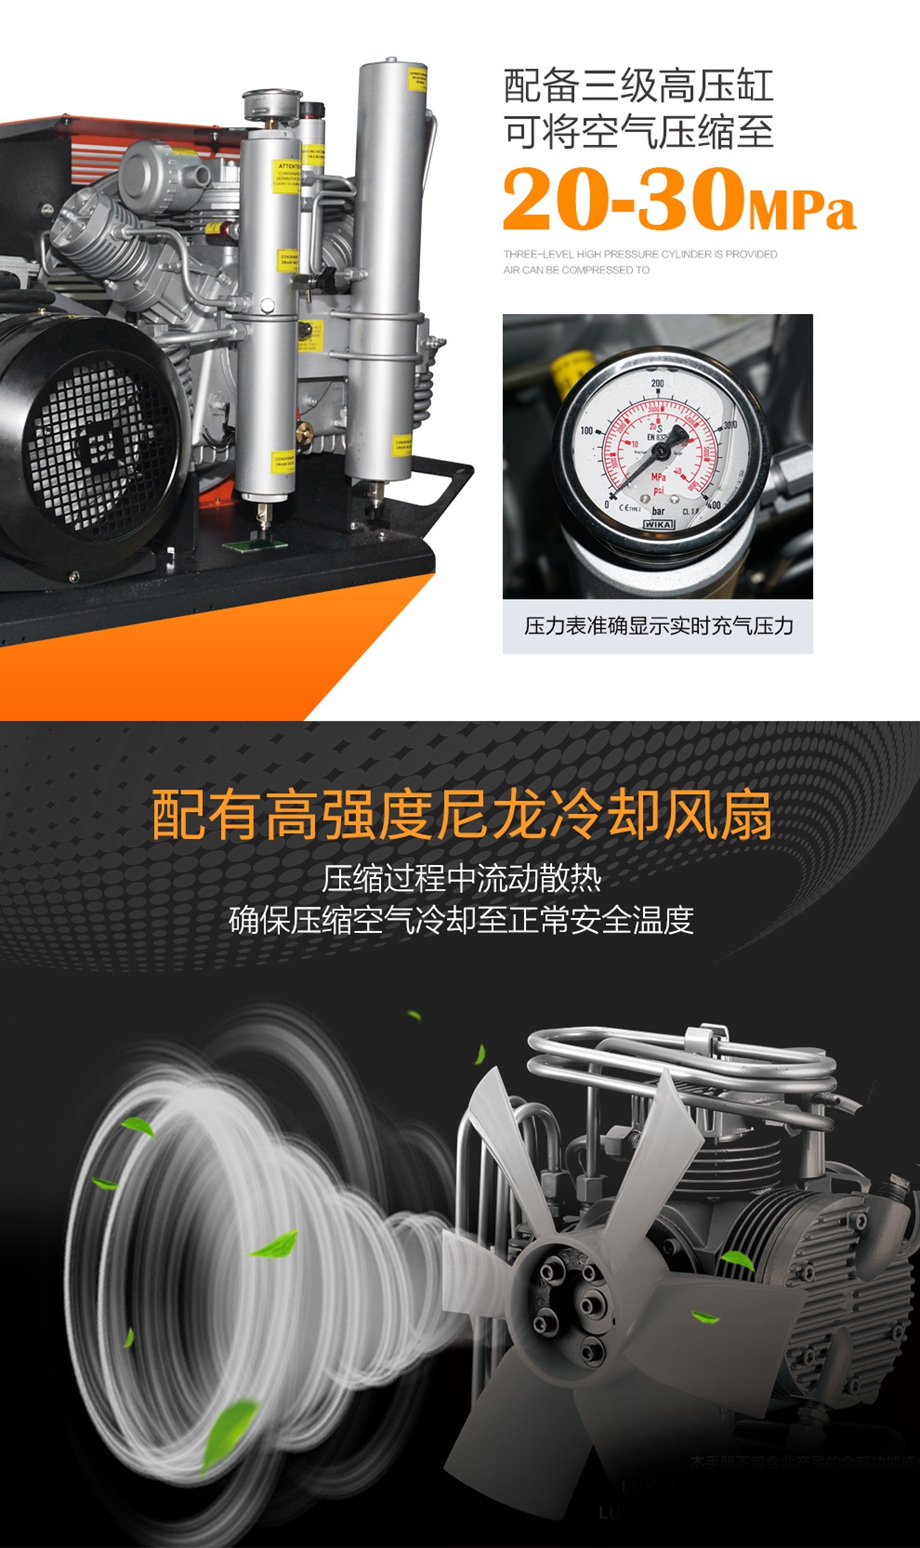 海固HG-CQ300高压呼吸空气压缩机 正压式空气呼吸器充气泵